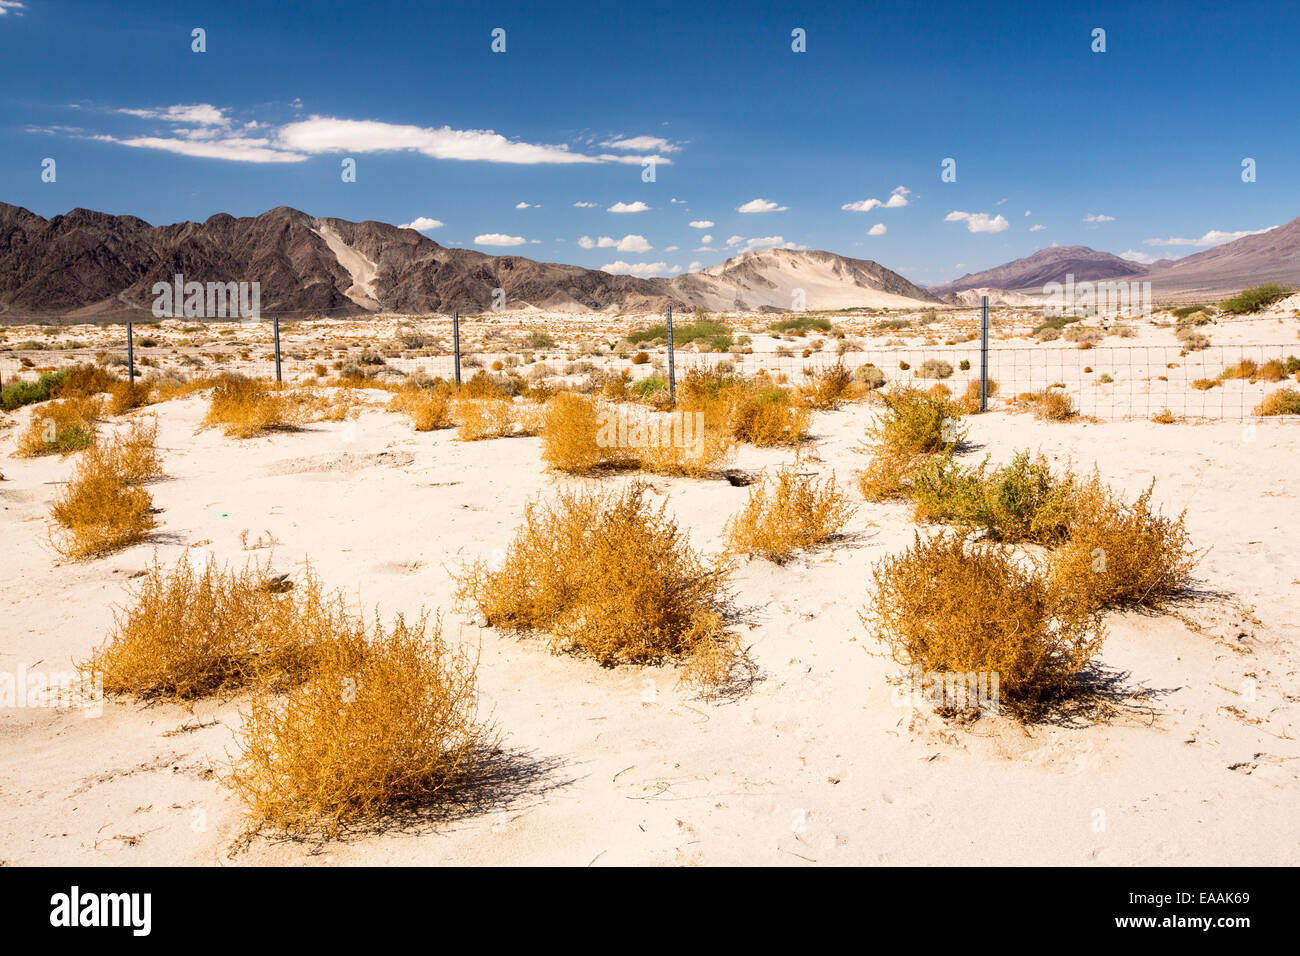 Tumbleweed growing in the Mojave Desert in California, USA. Stock Photo